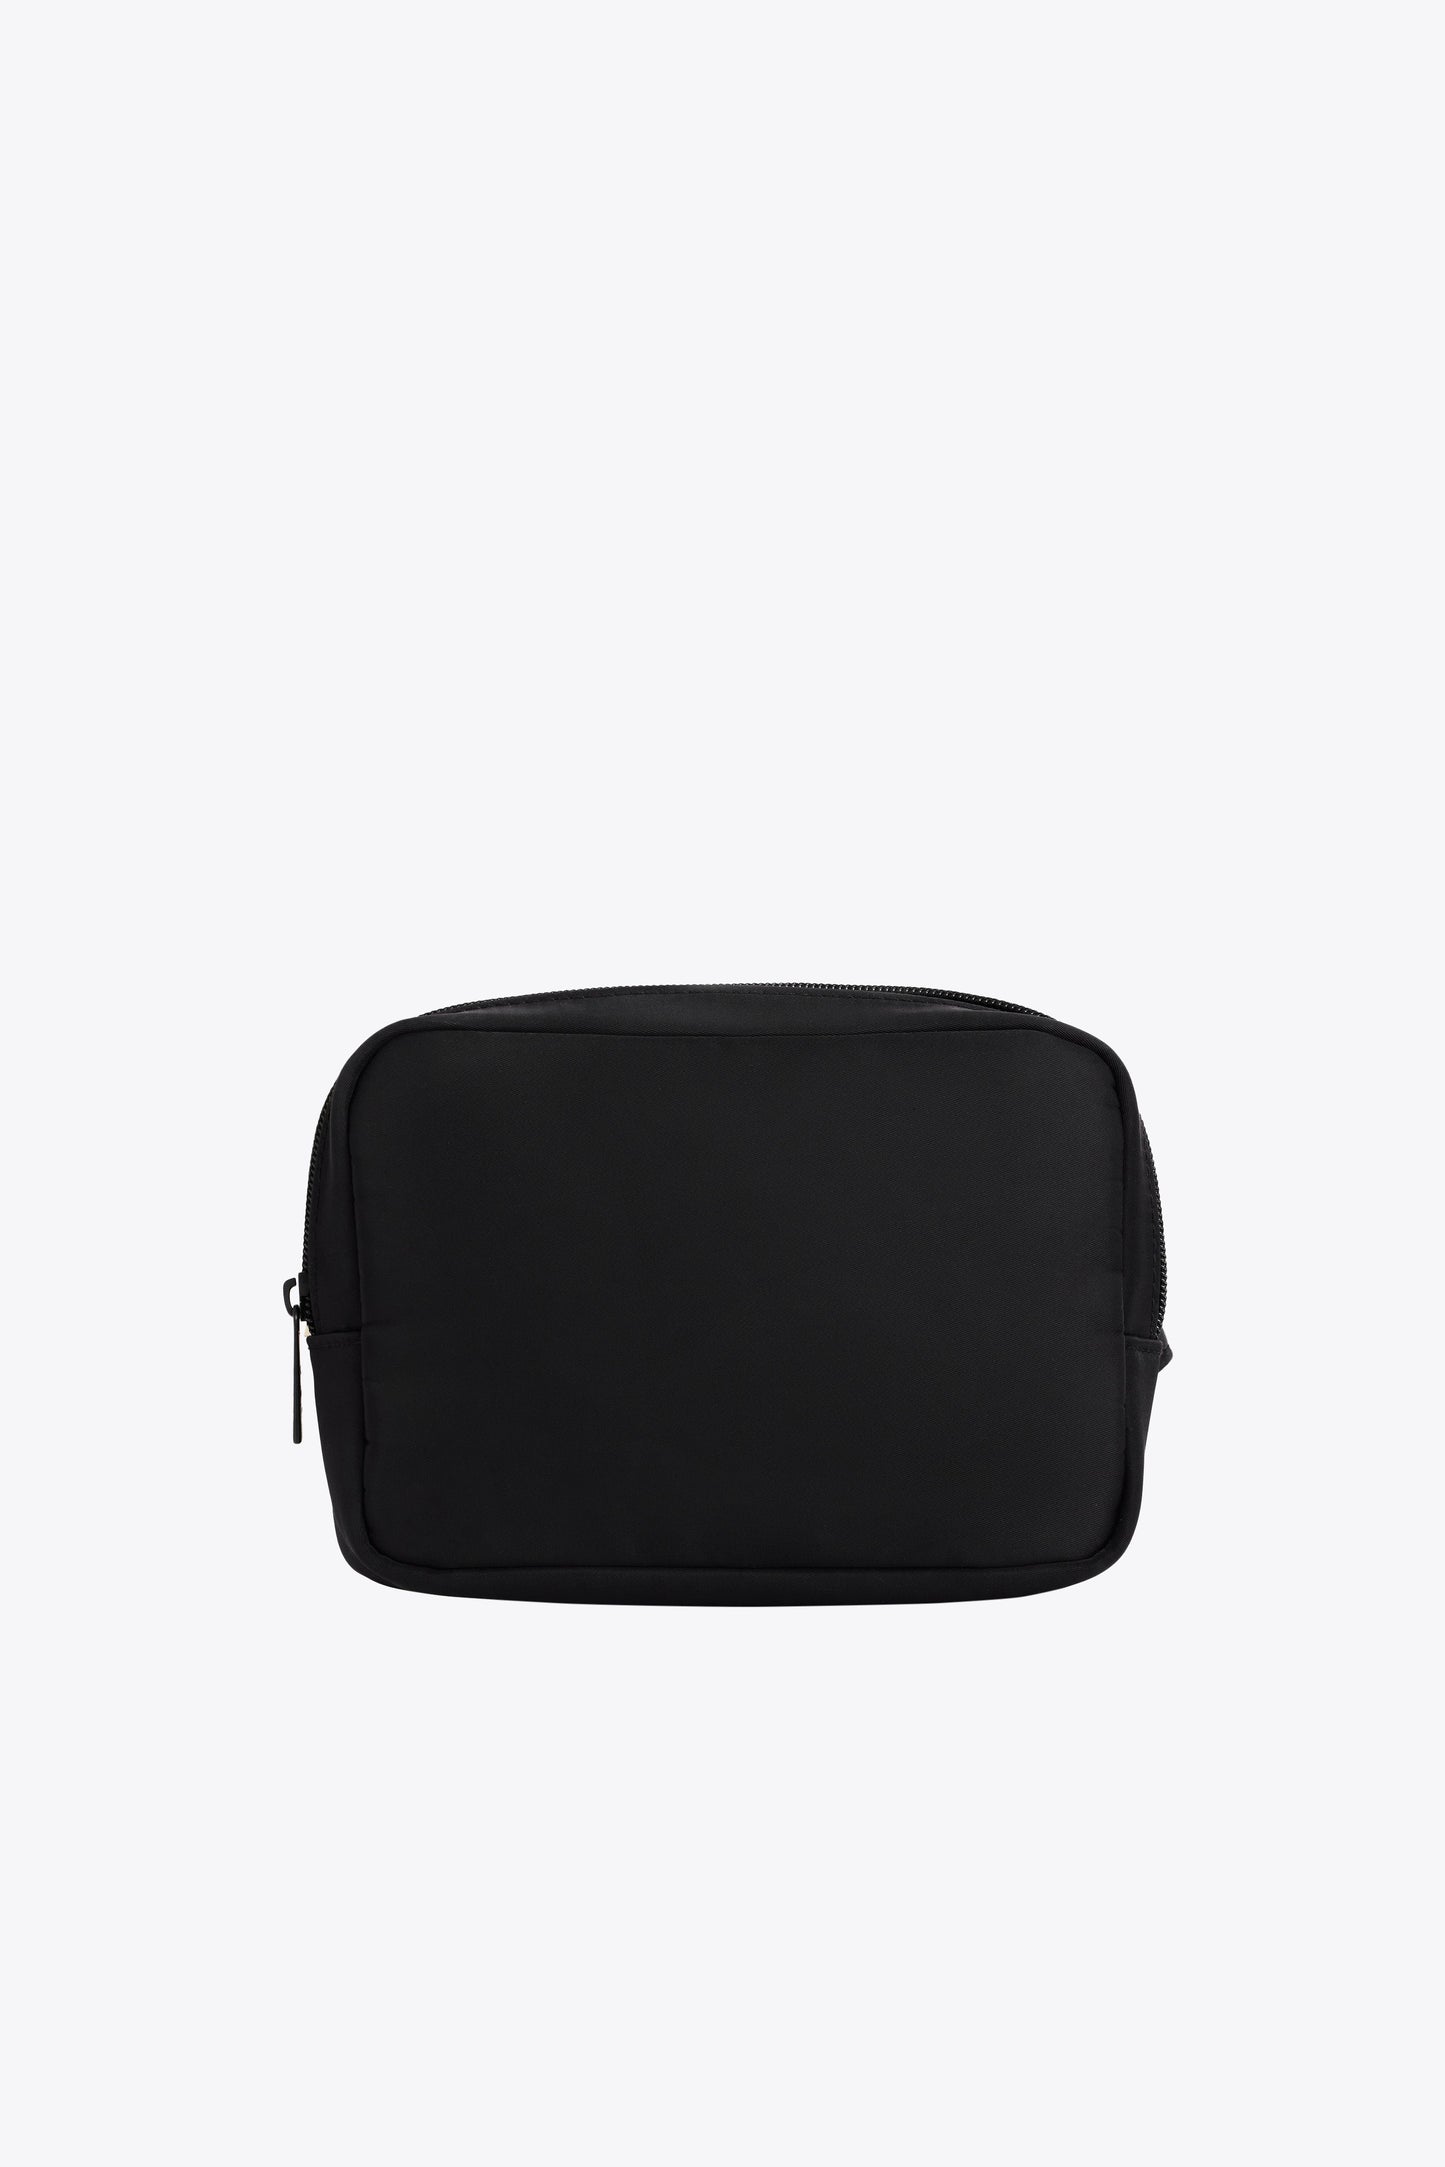 The Belt Bag In Black